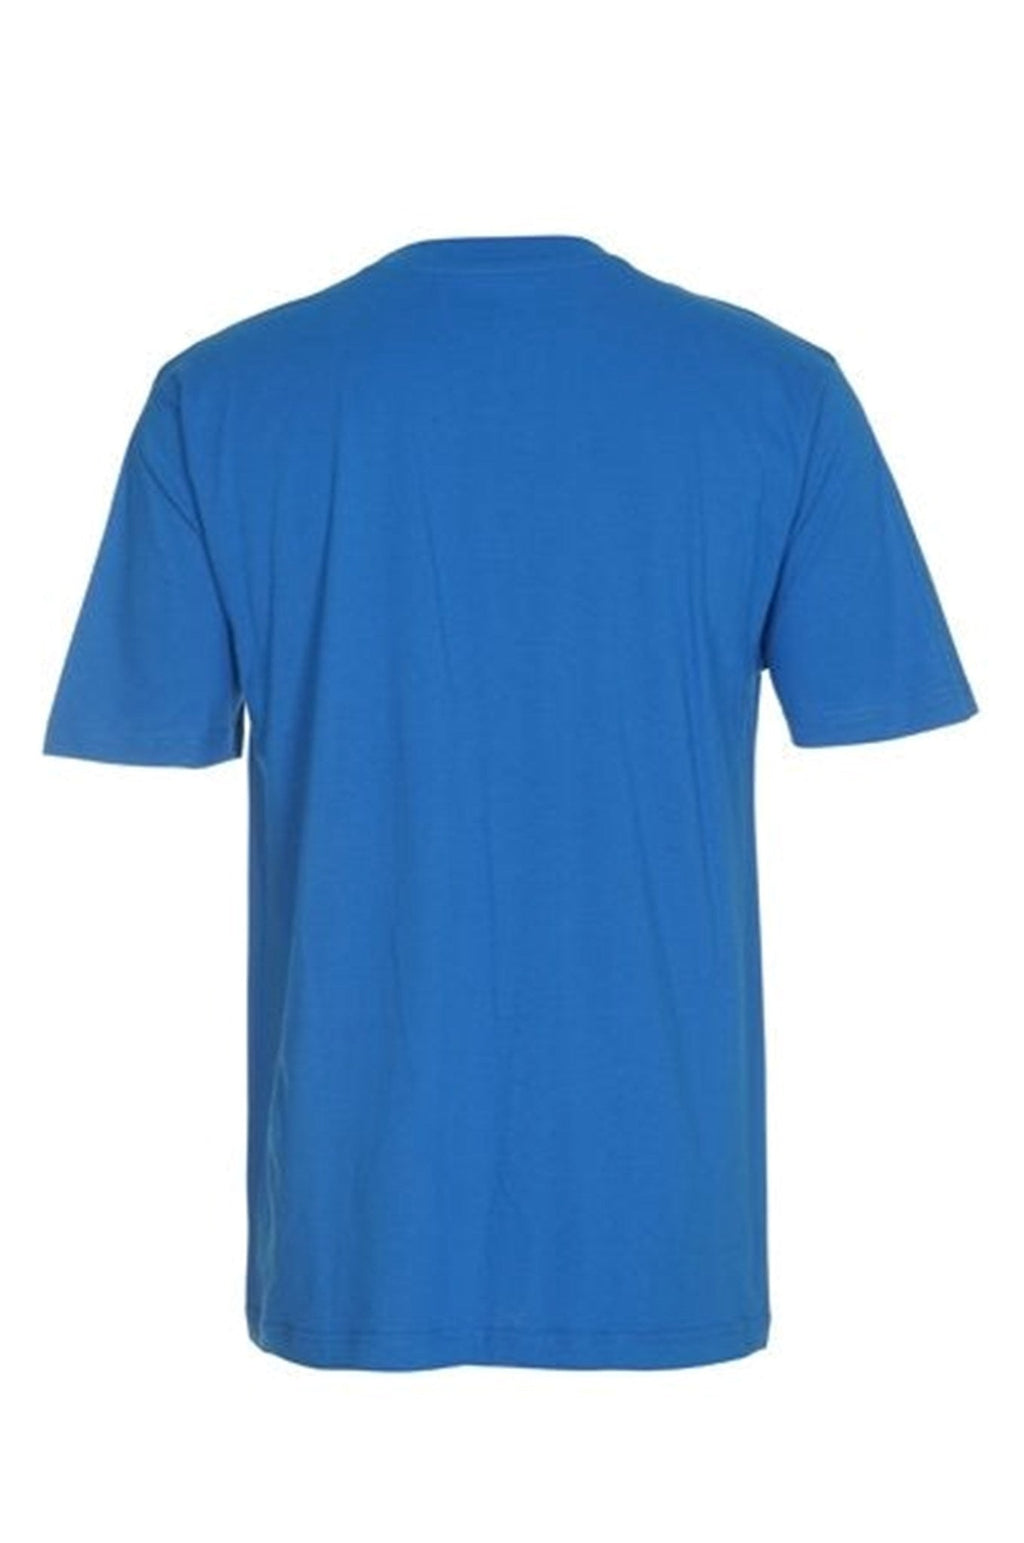 T-shirt surdimensionné - bleu turquoise